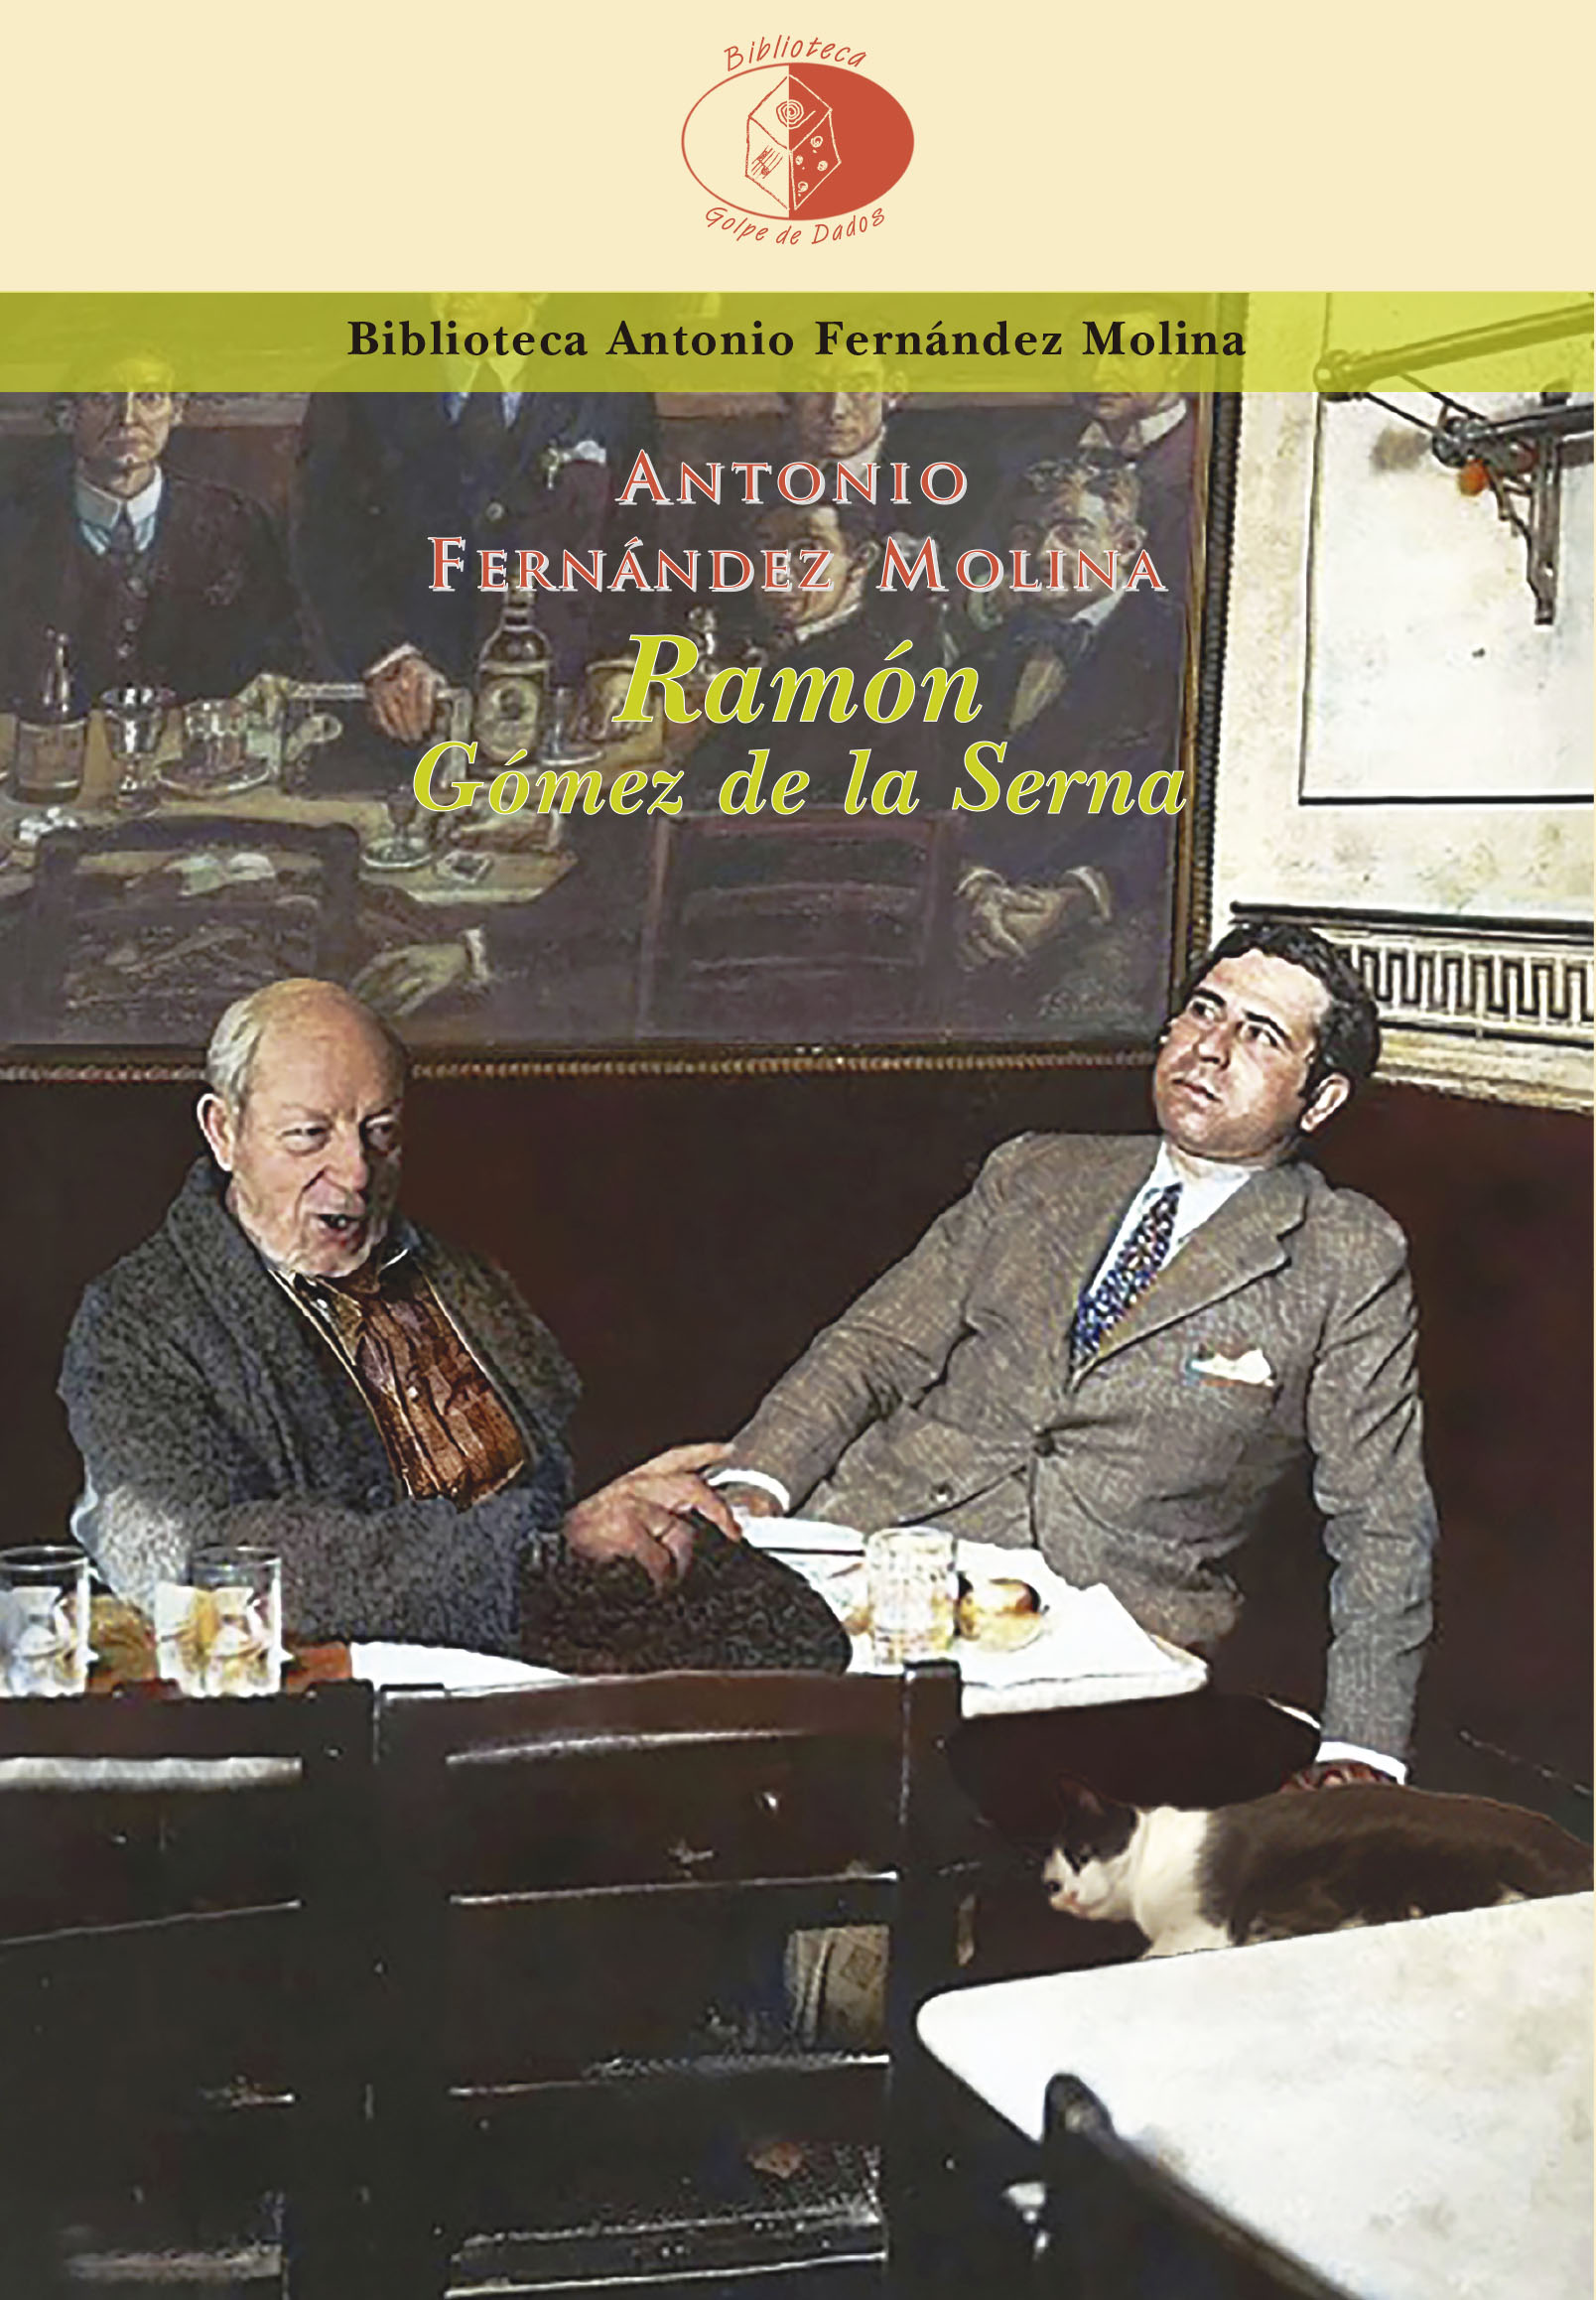 Enrique Villagrasa reseña Ramón Gómez de la Serna, de Antonio Fernández Molina, para Librújula